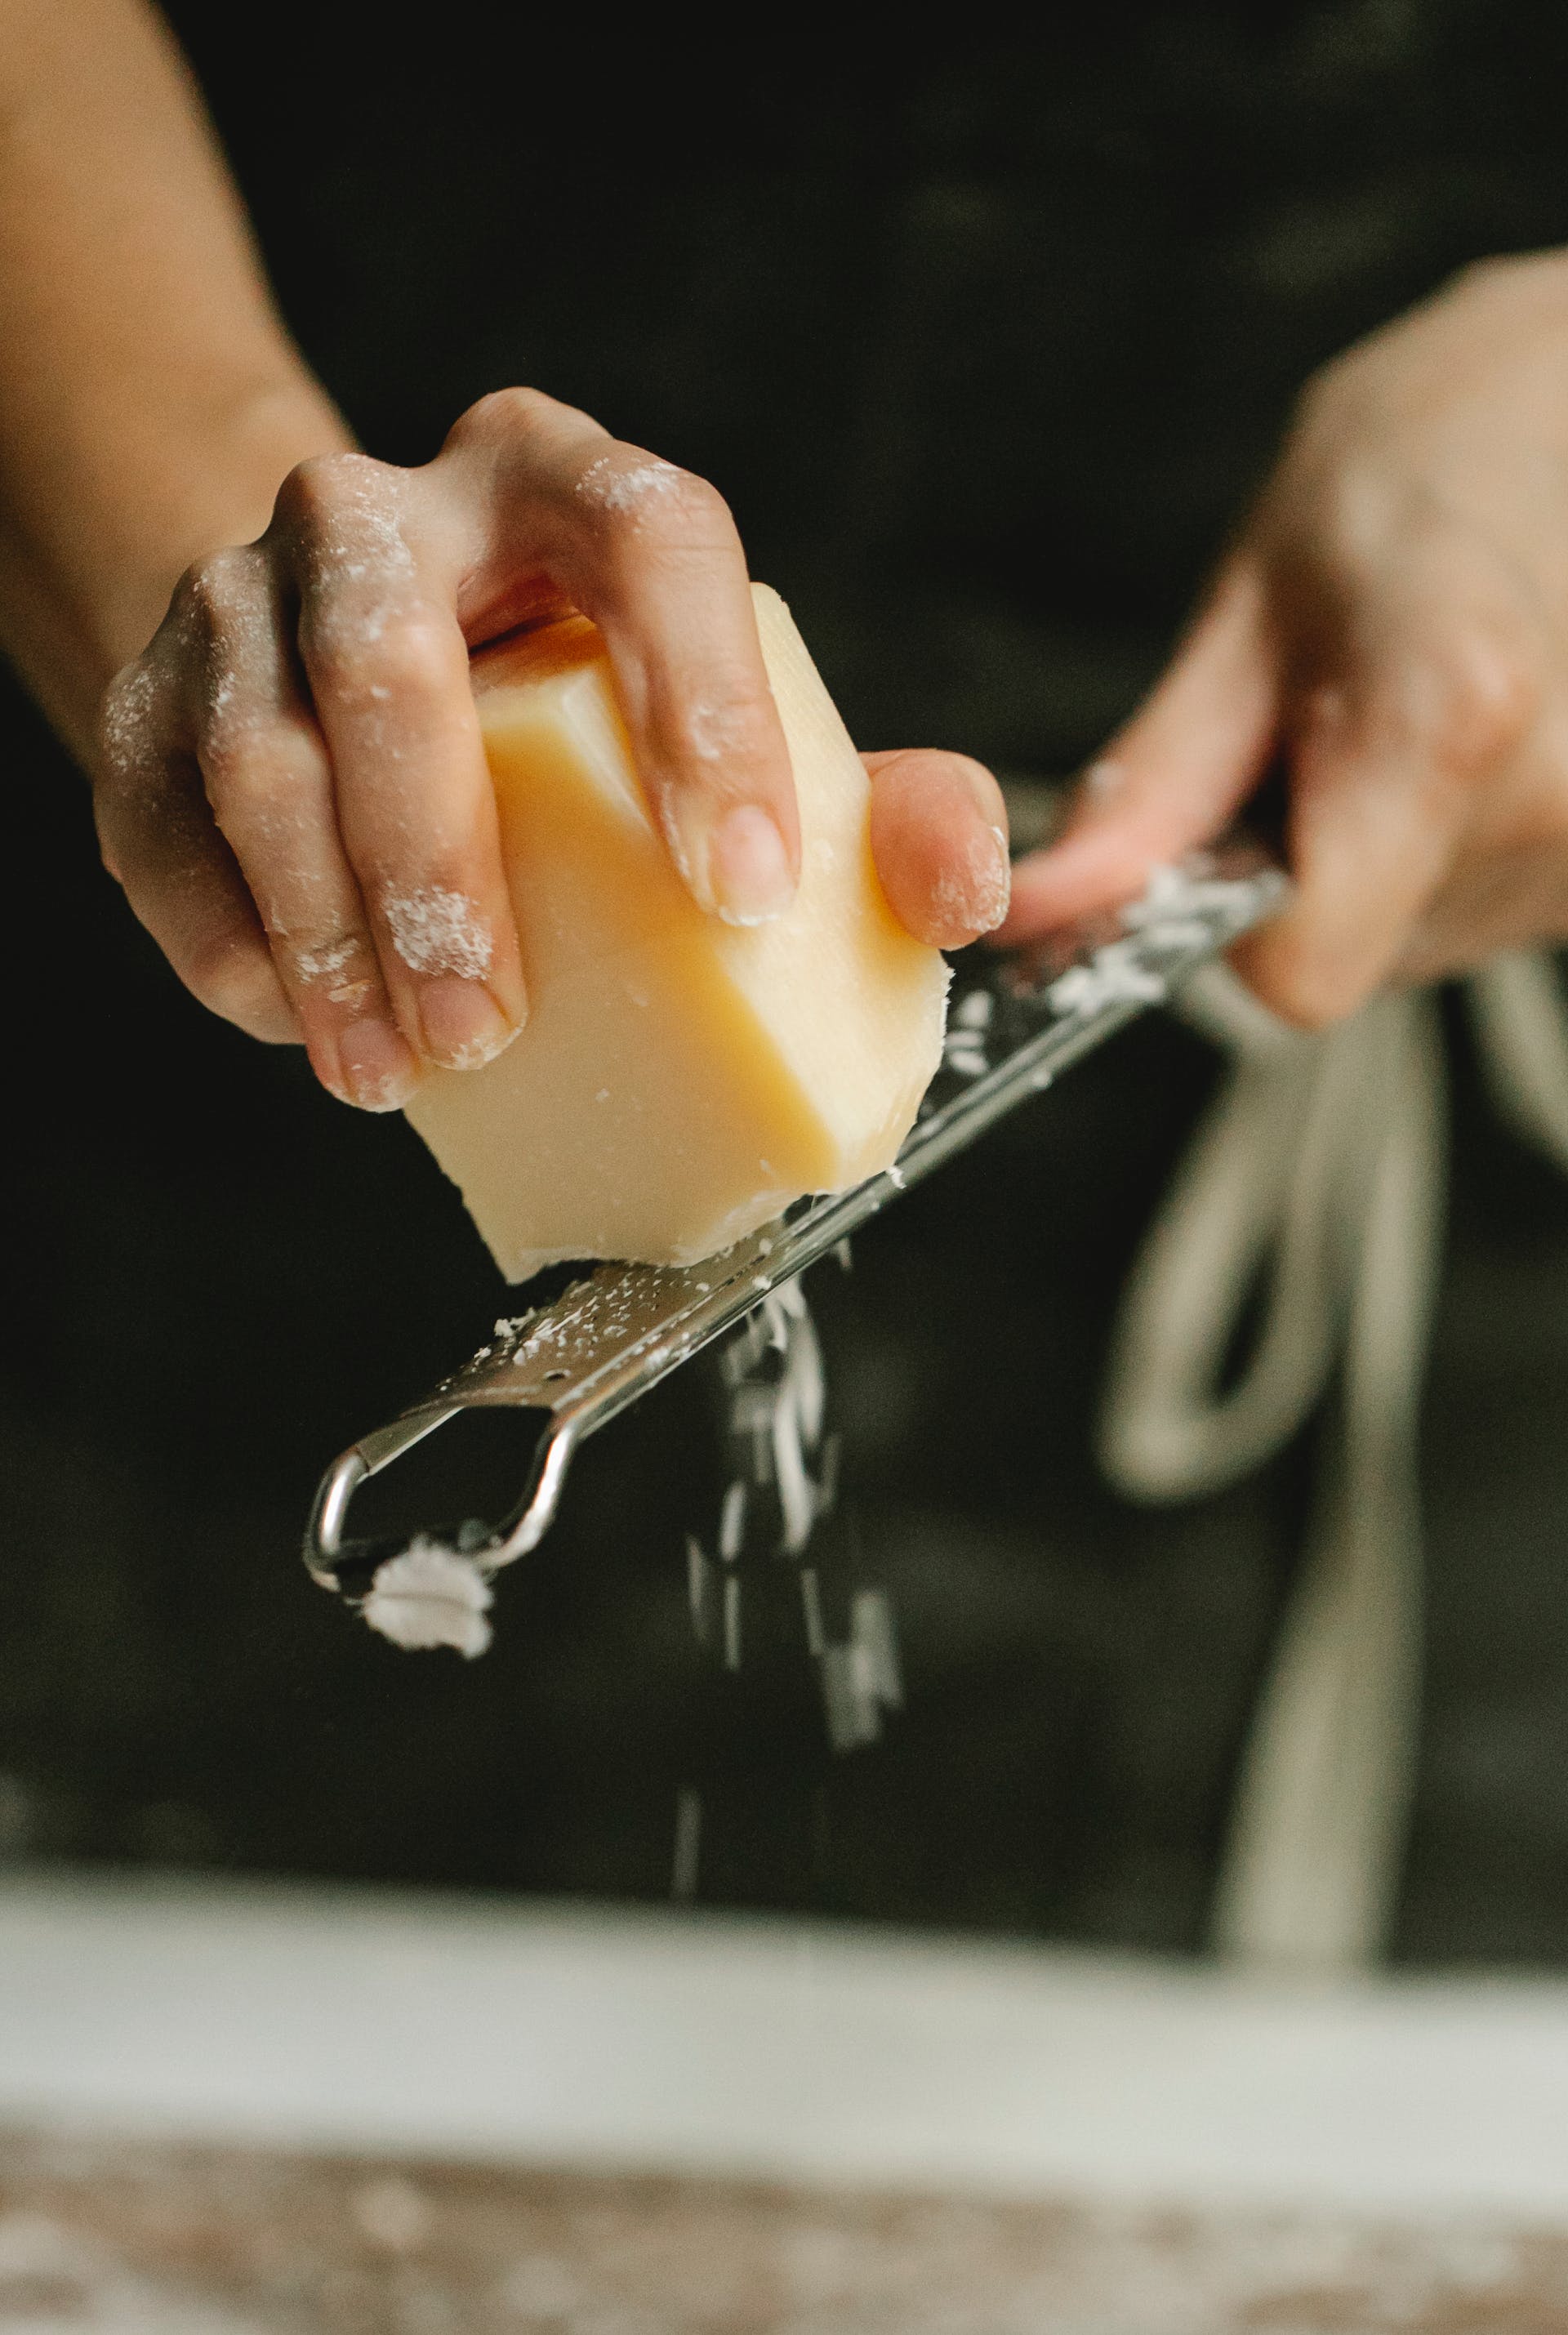 Uma pessoa ralando queijo | Fonte: Pexels